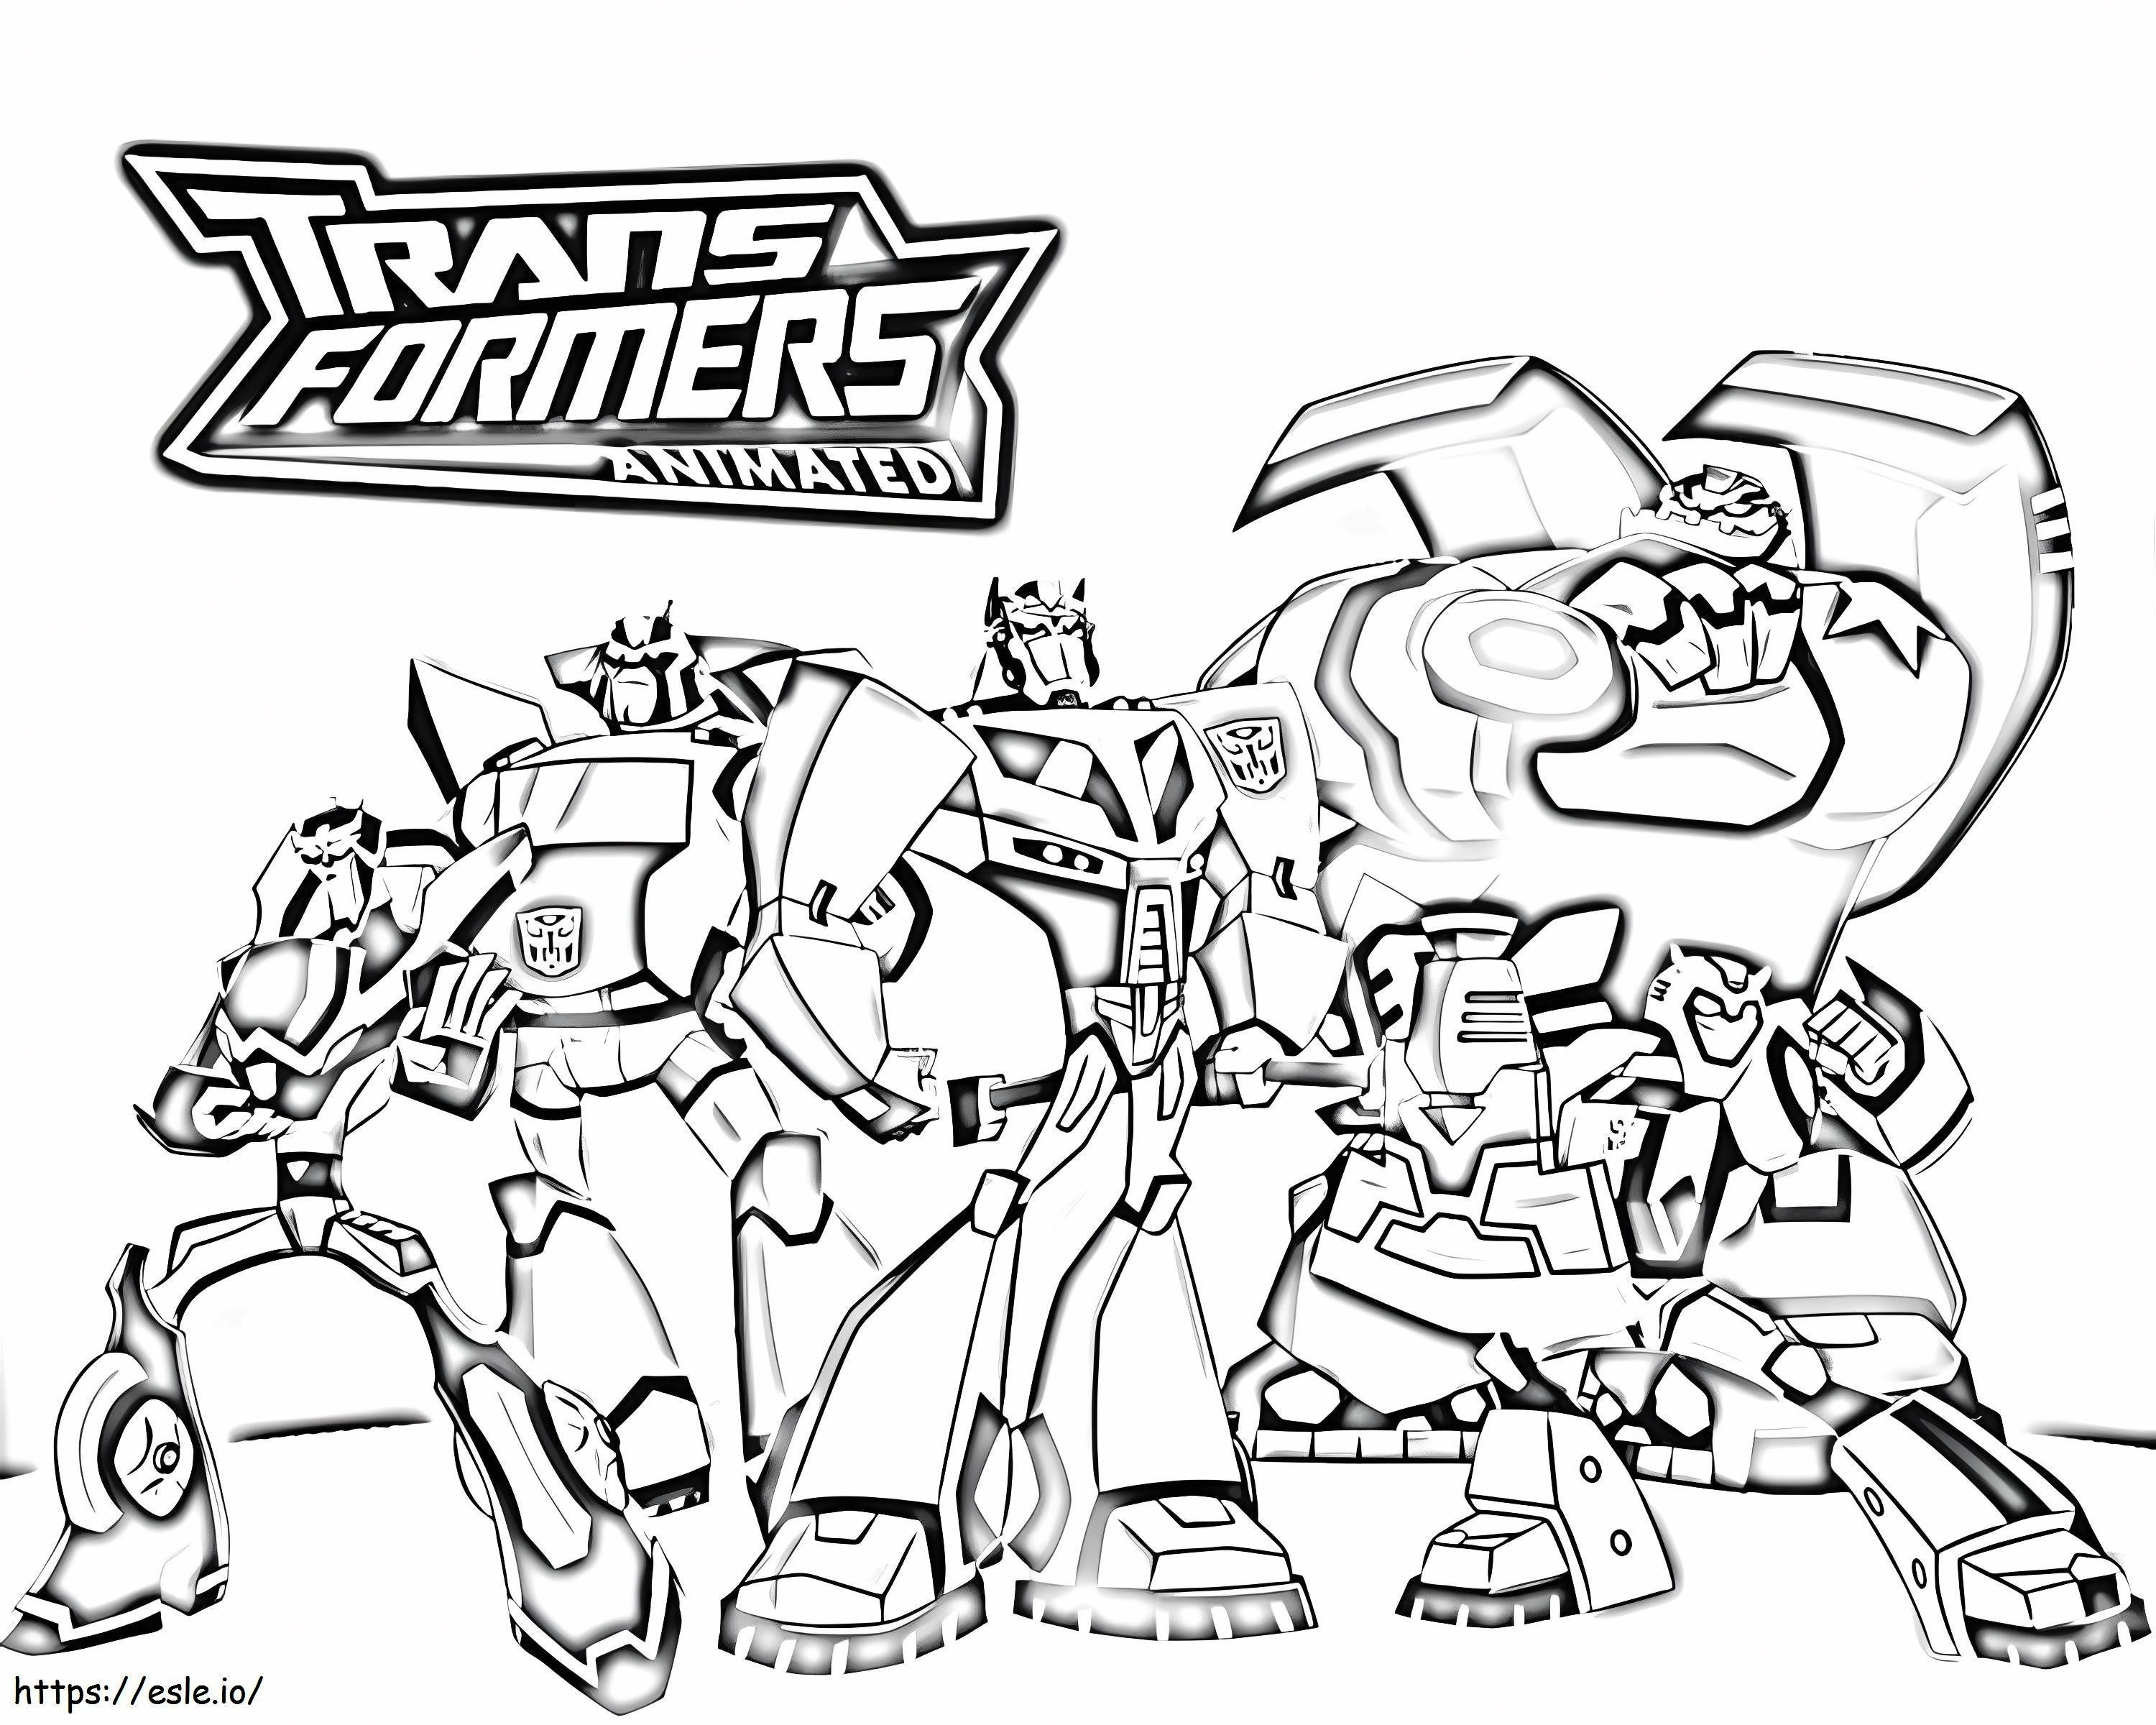 Transformers animate de colorat